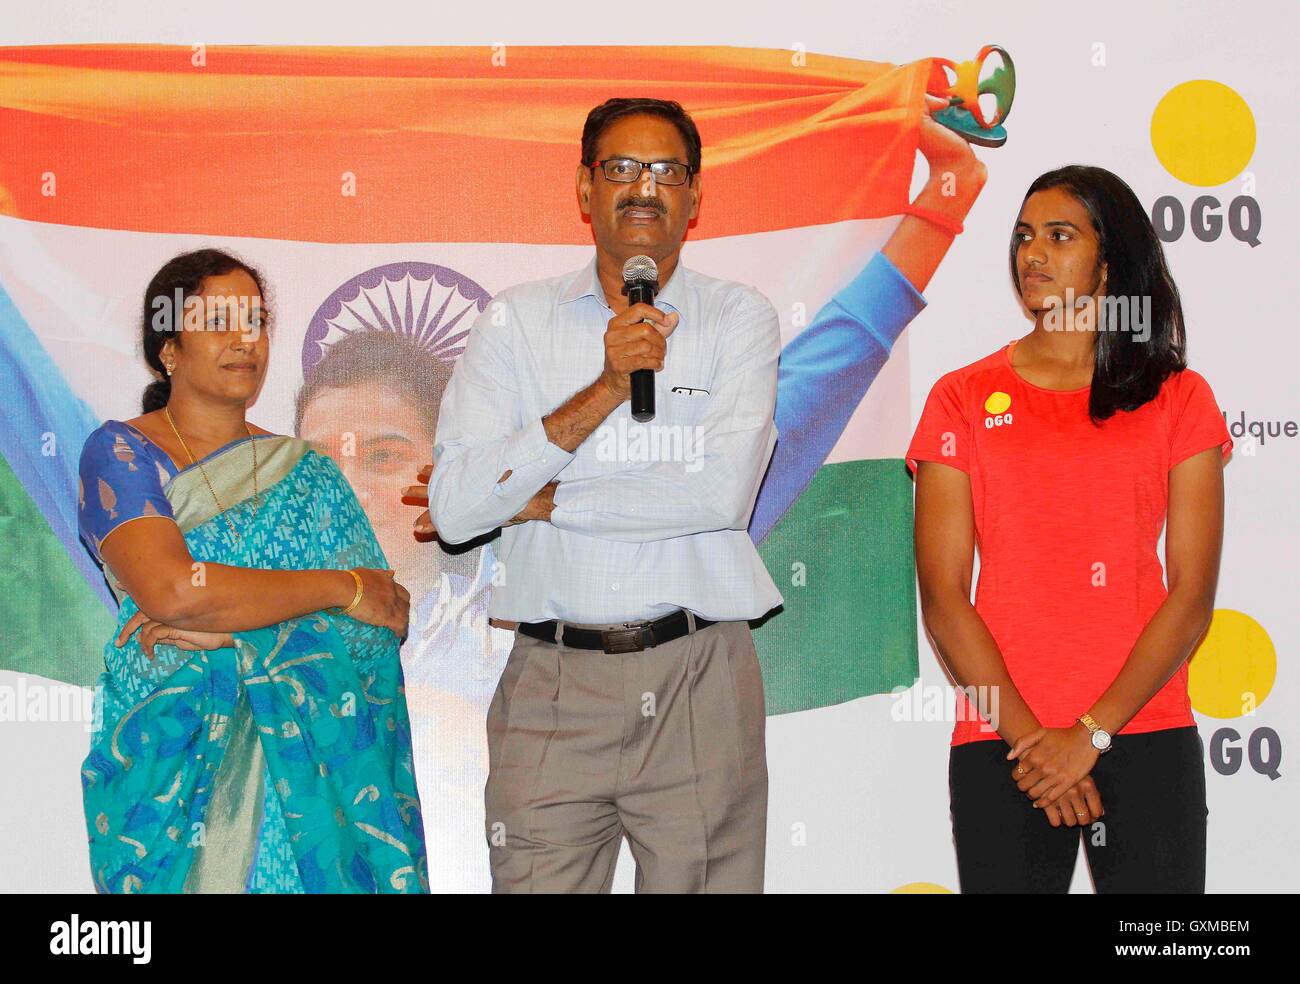 Joueur de badminton indien d'argent olympique P V Sindhu parents PV Ramana et P Vijaya félicitation organisé fonction OGQ Mumbai Banque D'Images